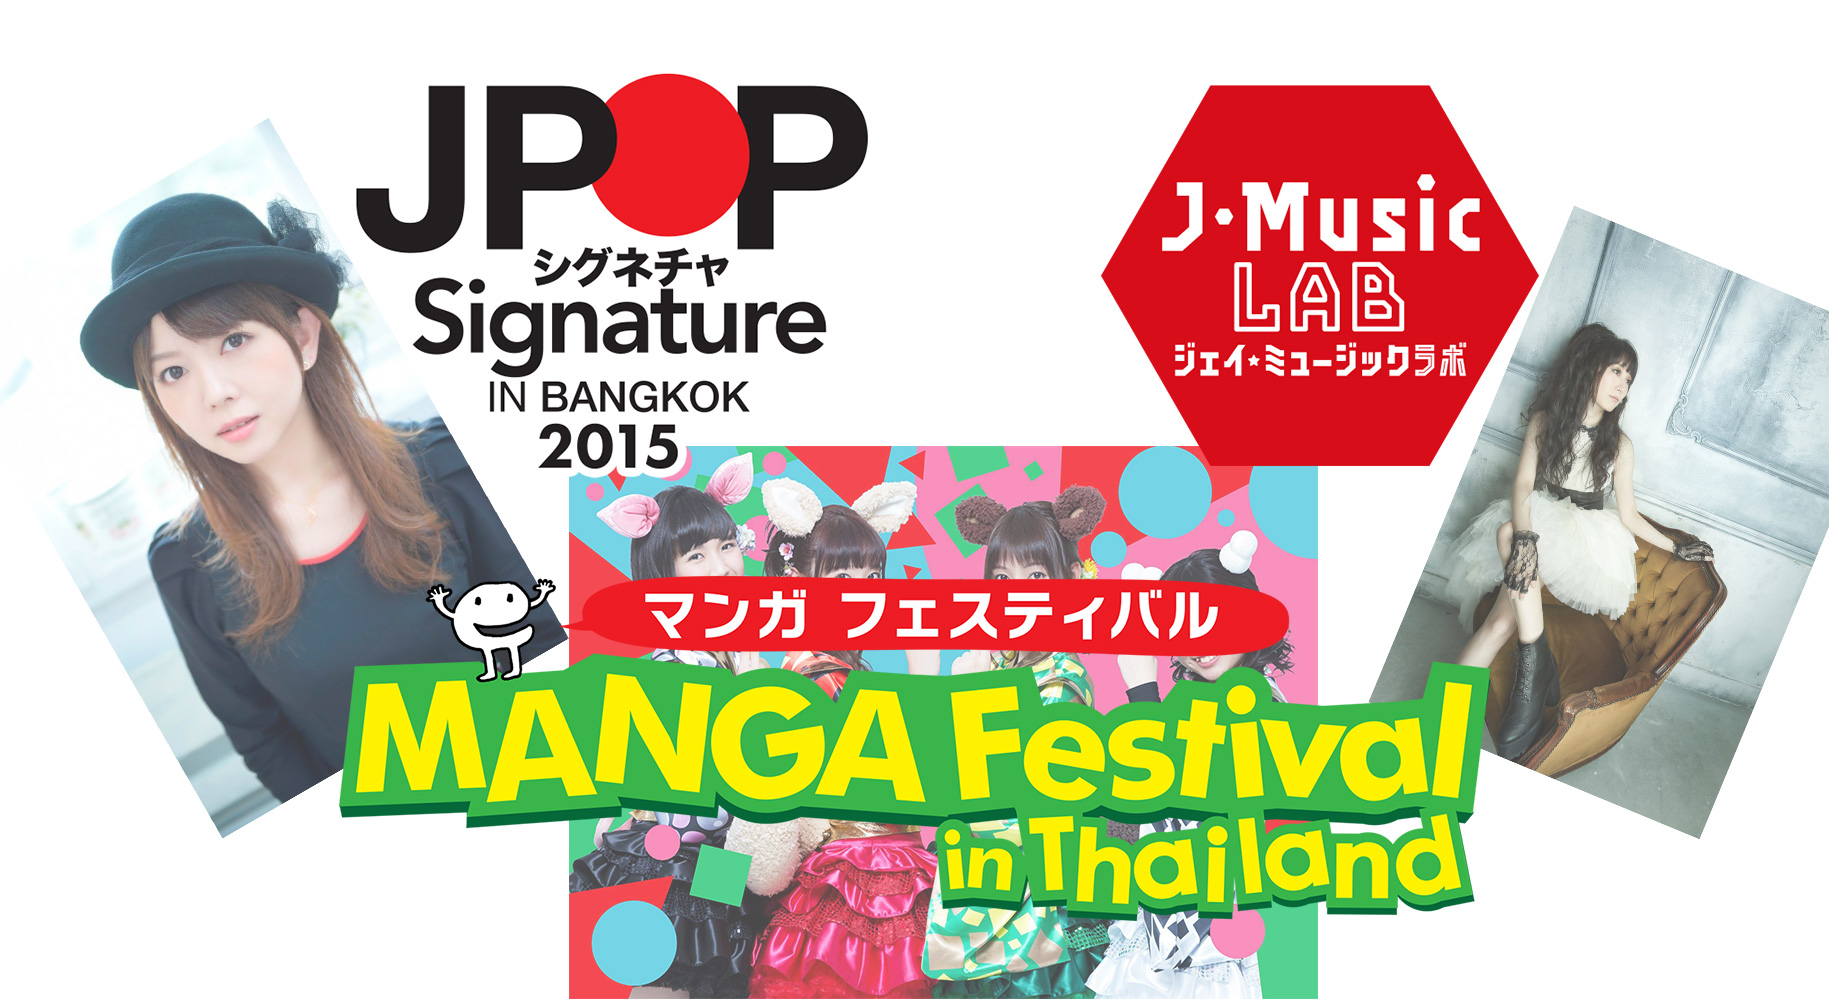 วันศุกร์ – อาทิตย์นี้ห้ามพลาด !! งาน MANGA FESTIVAL in THAILAND 2015 และ J POP SIGNATURE 2015